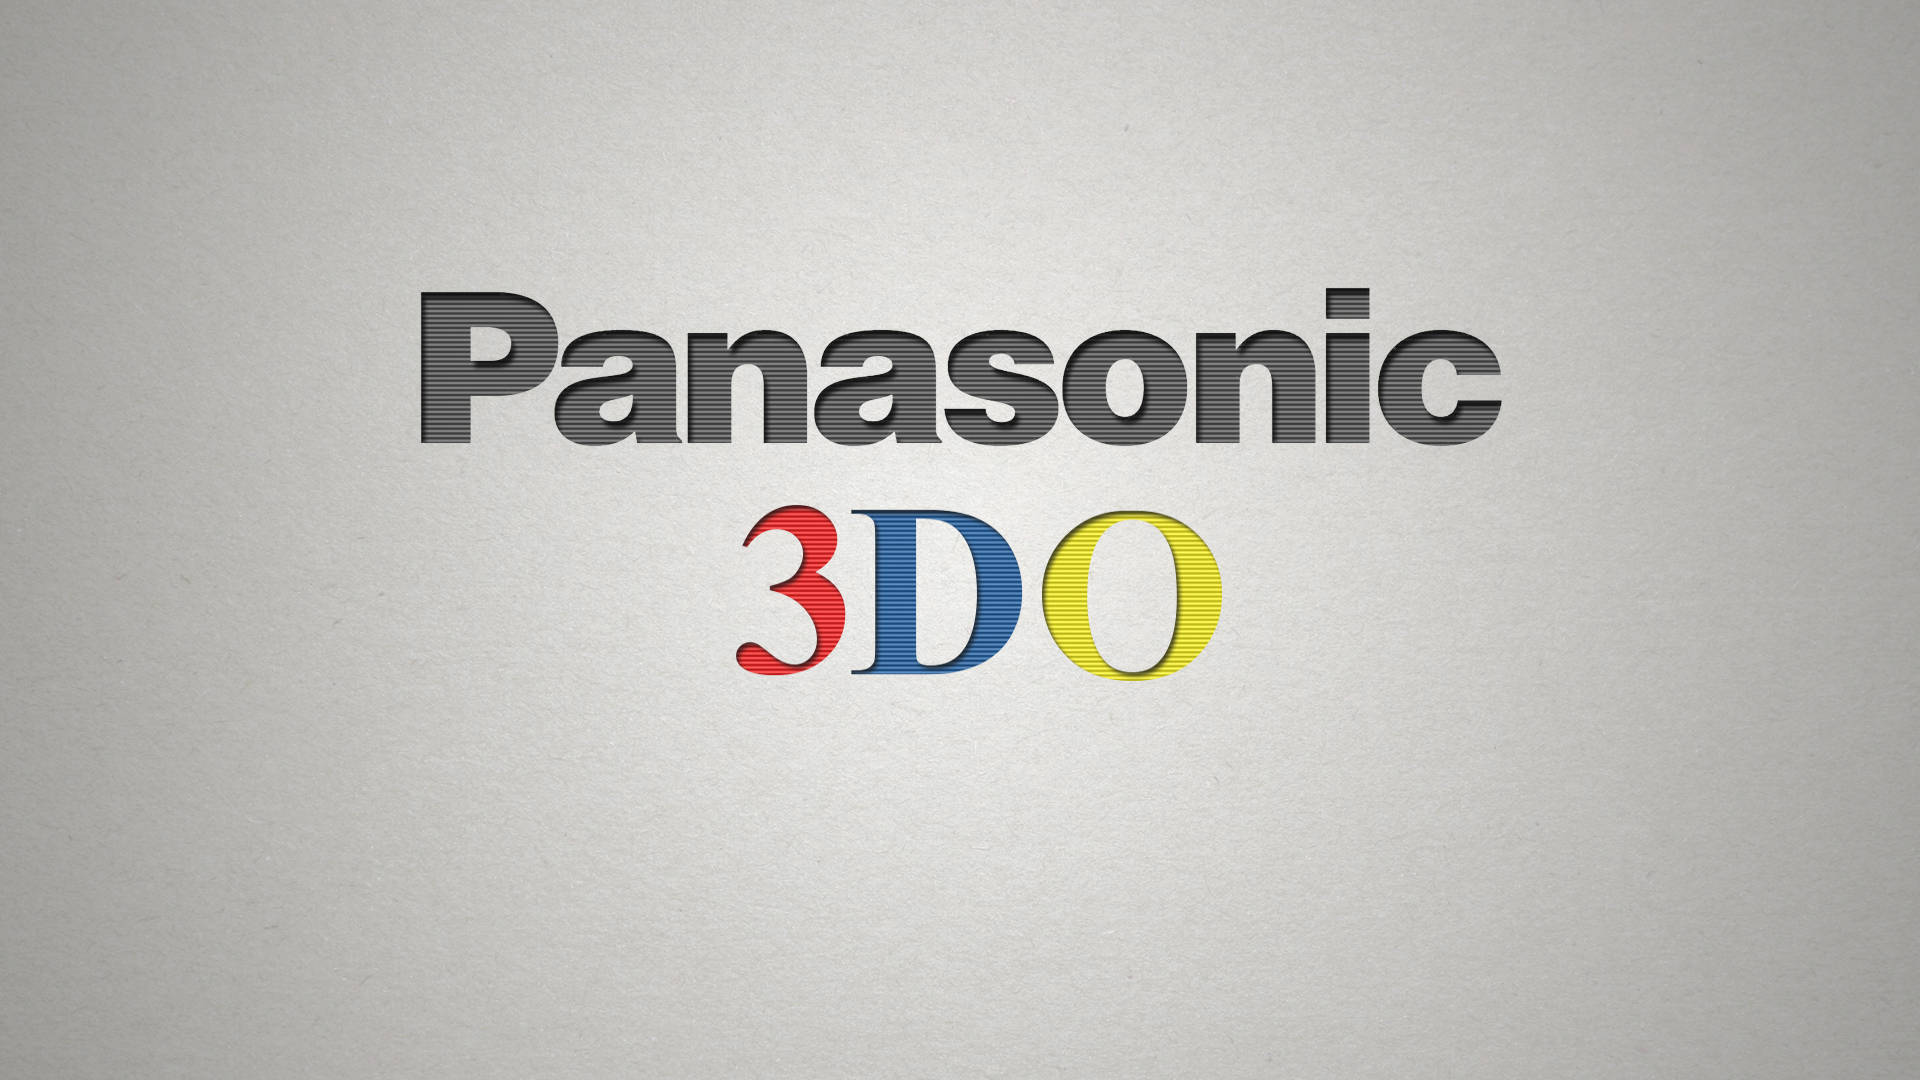 Panasonicgrau 3do Wallpaper